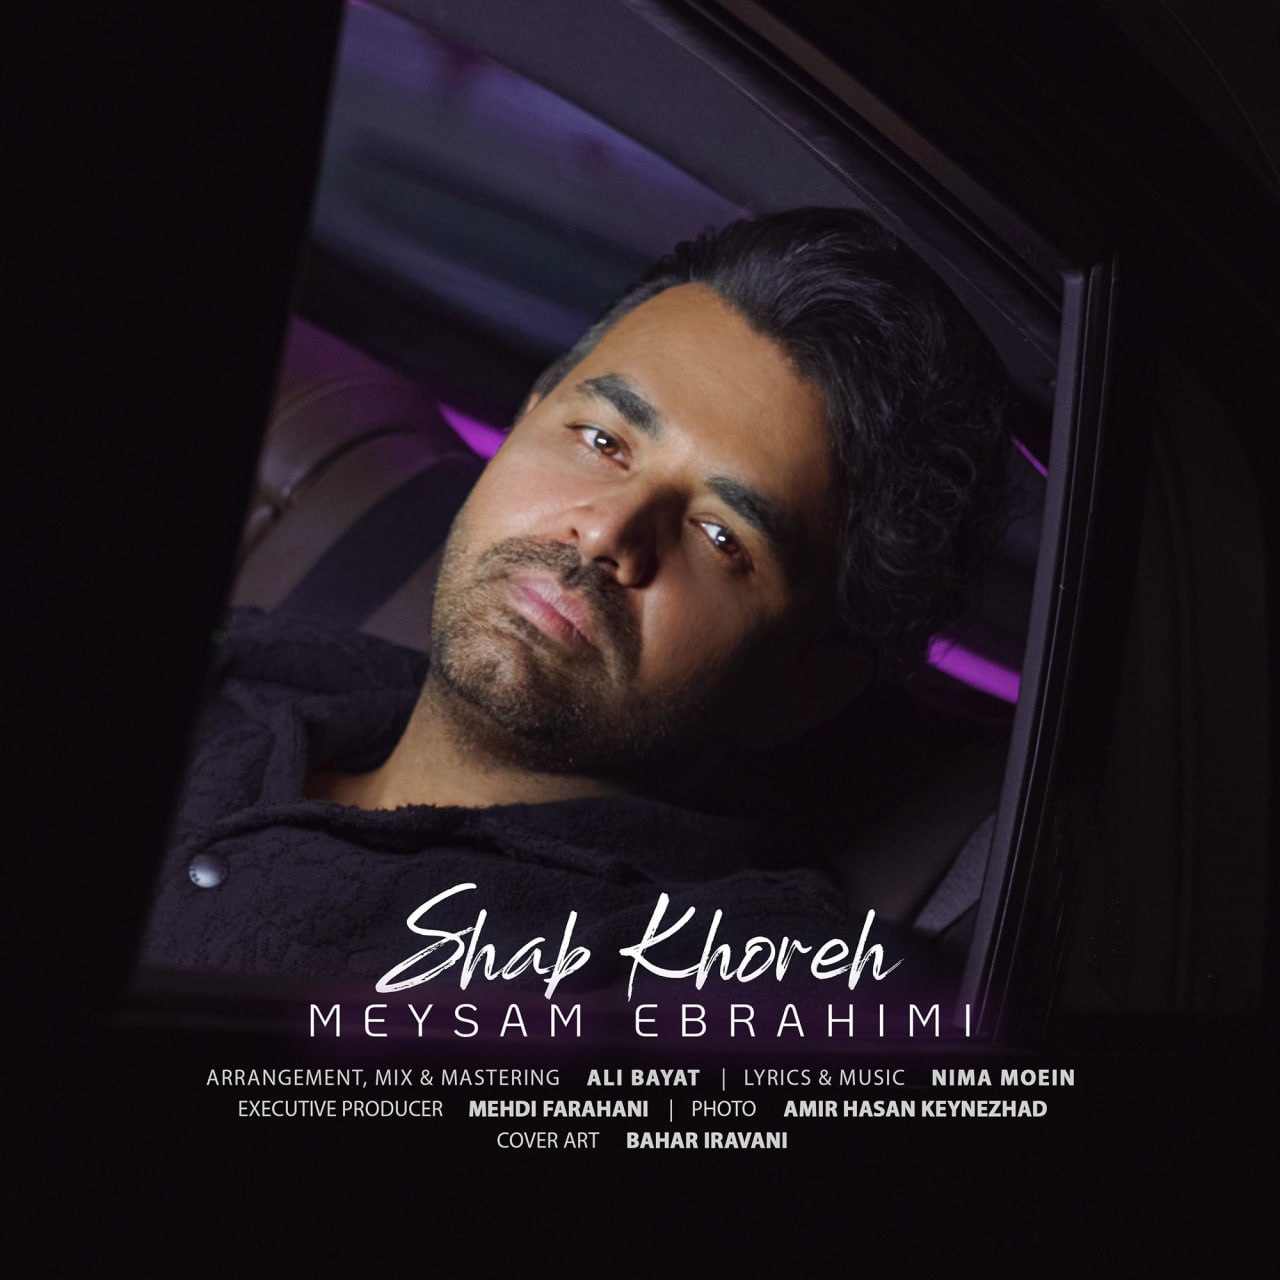 Shab Khoreh/Meysam Ebrahimi